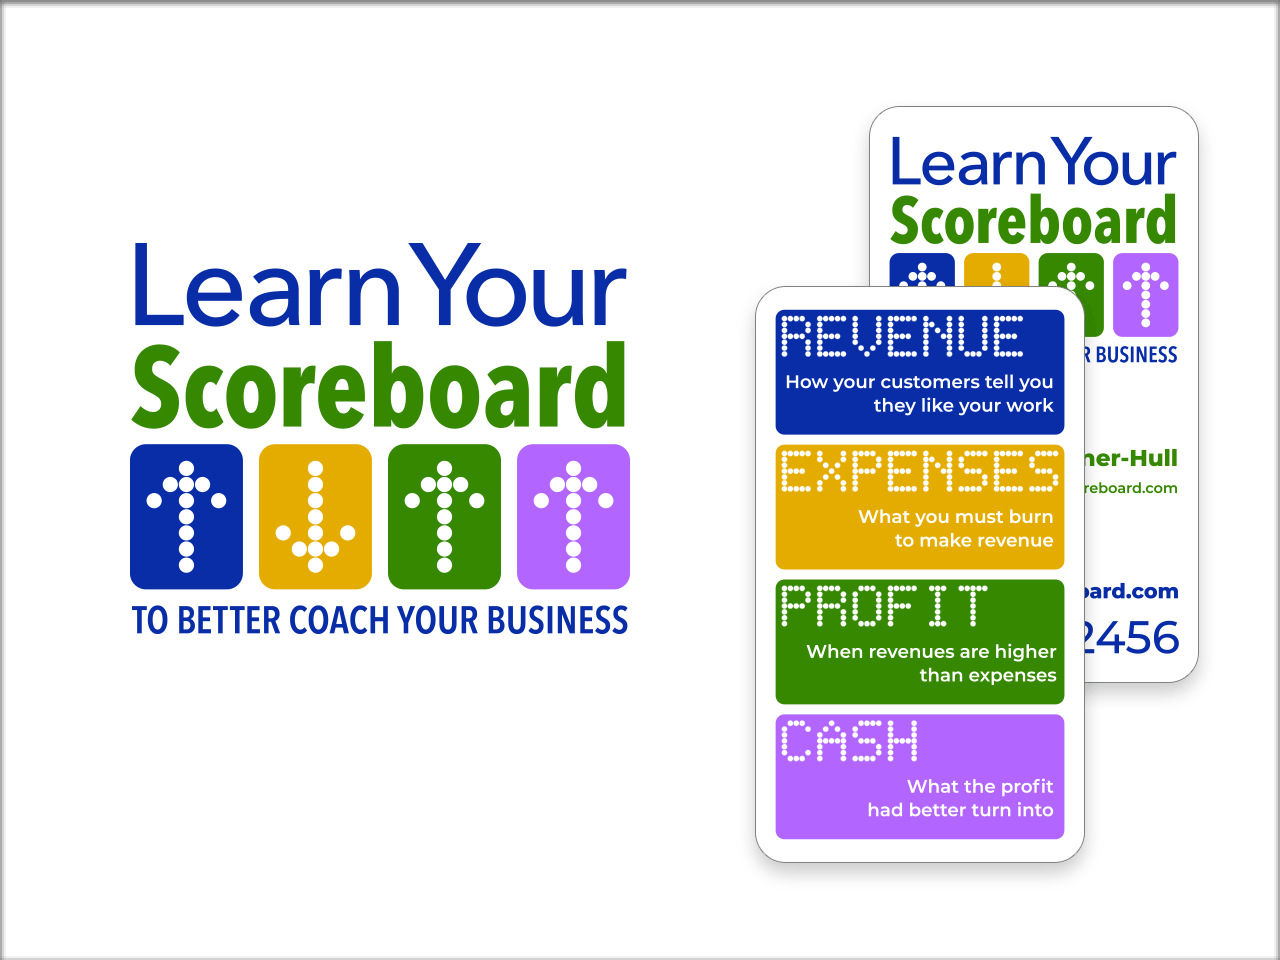 Learn Your Scoreboard logo